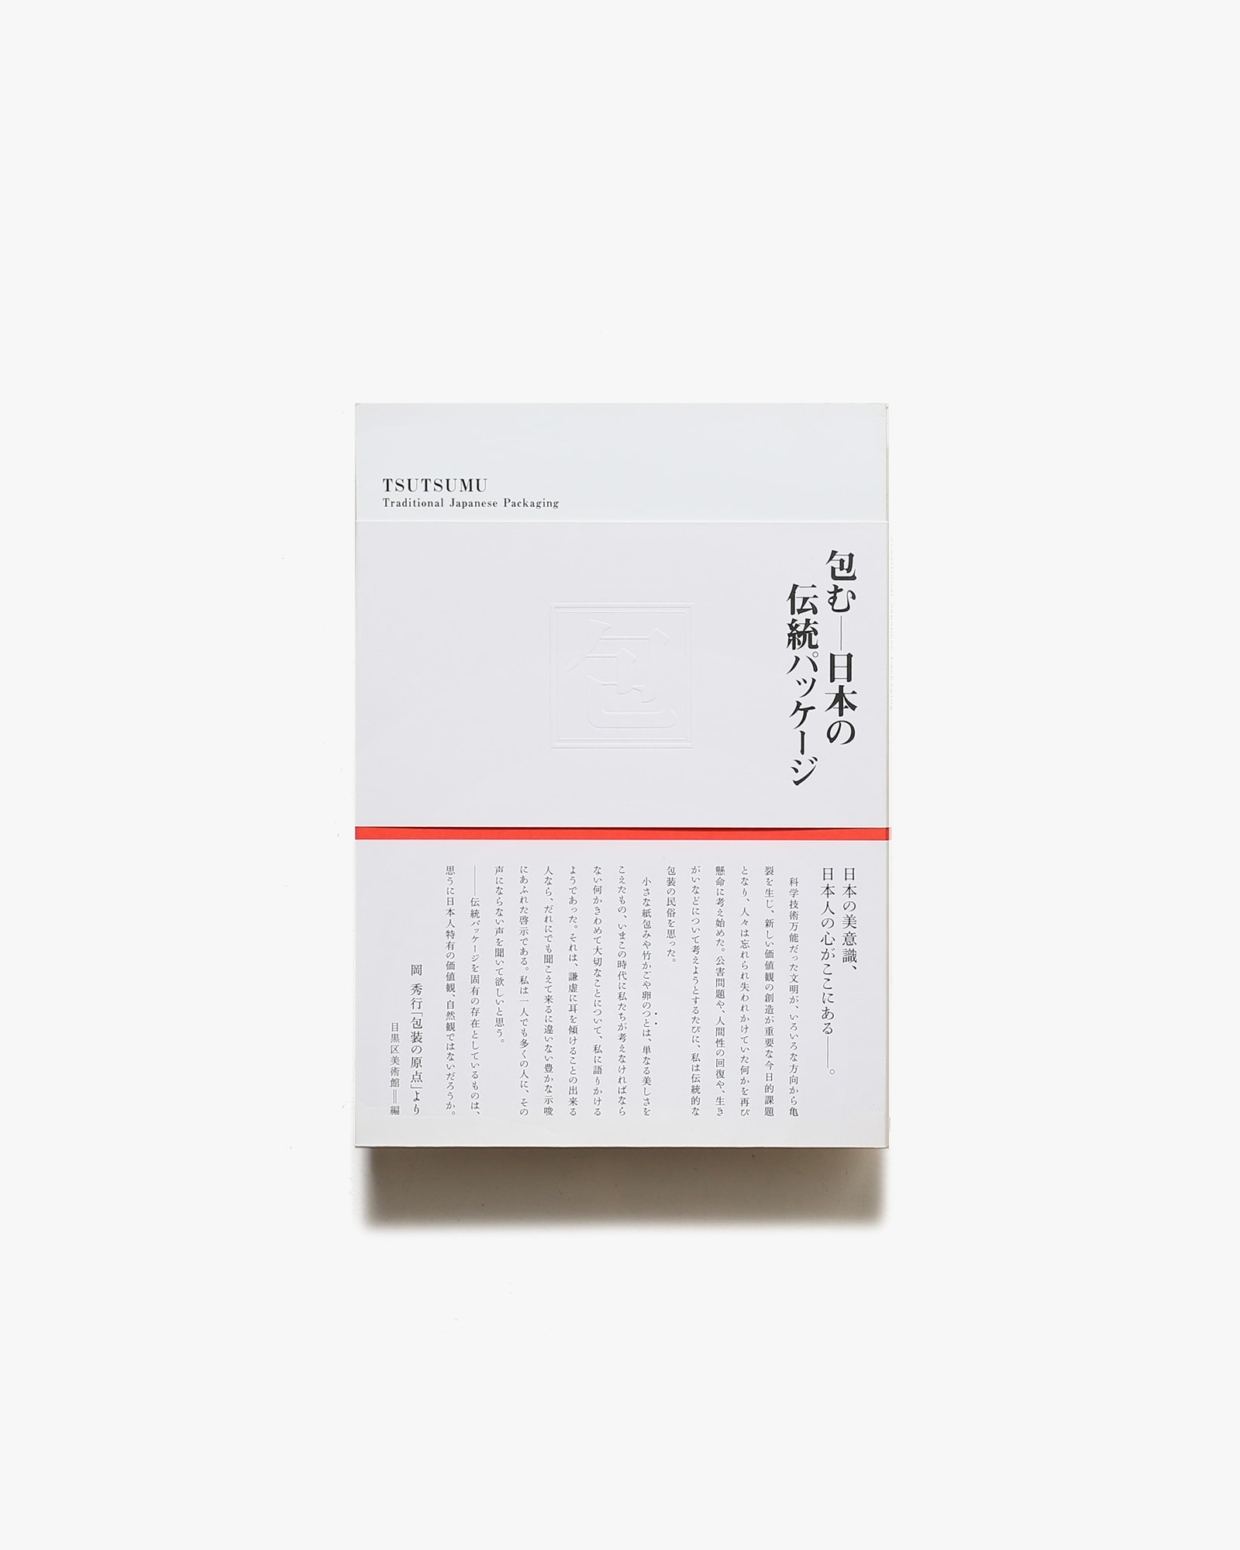 包む 日本の伝統パッケージ展 | 目黒区美術館